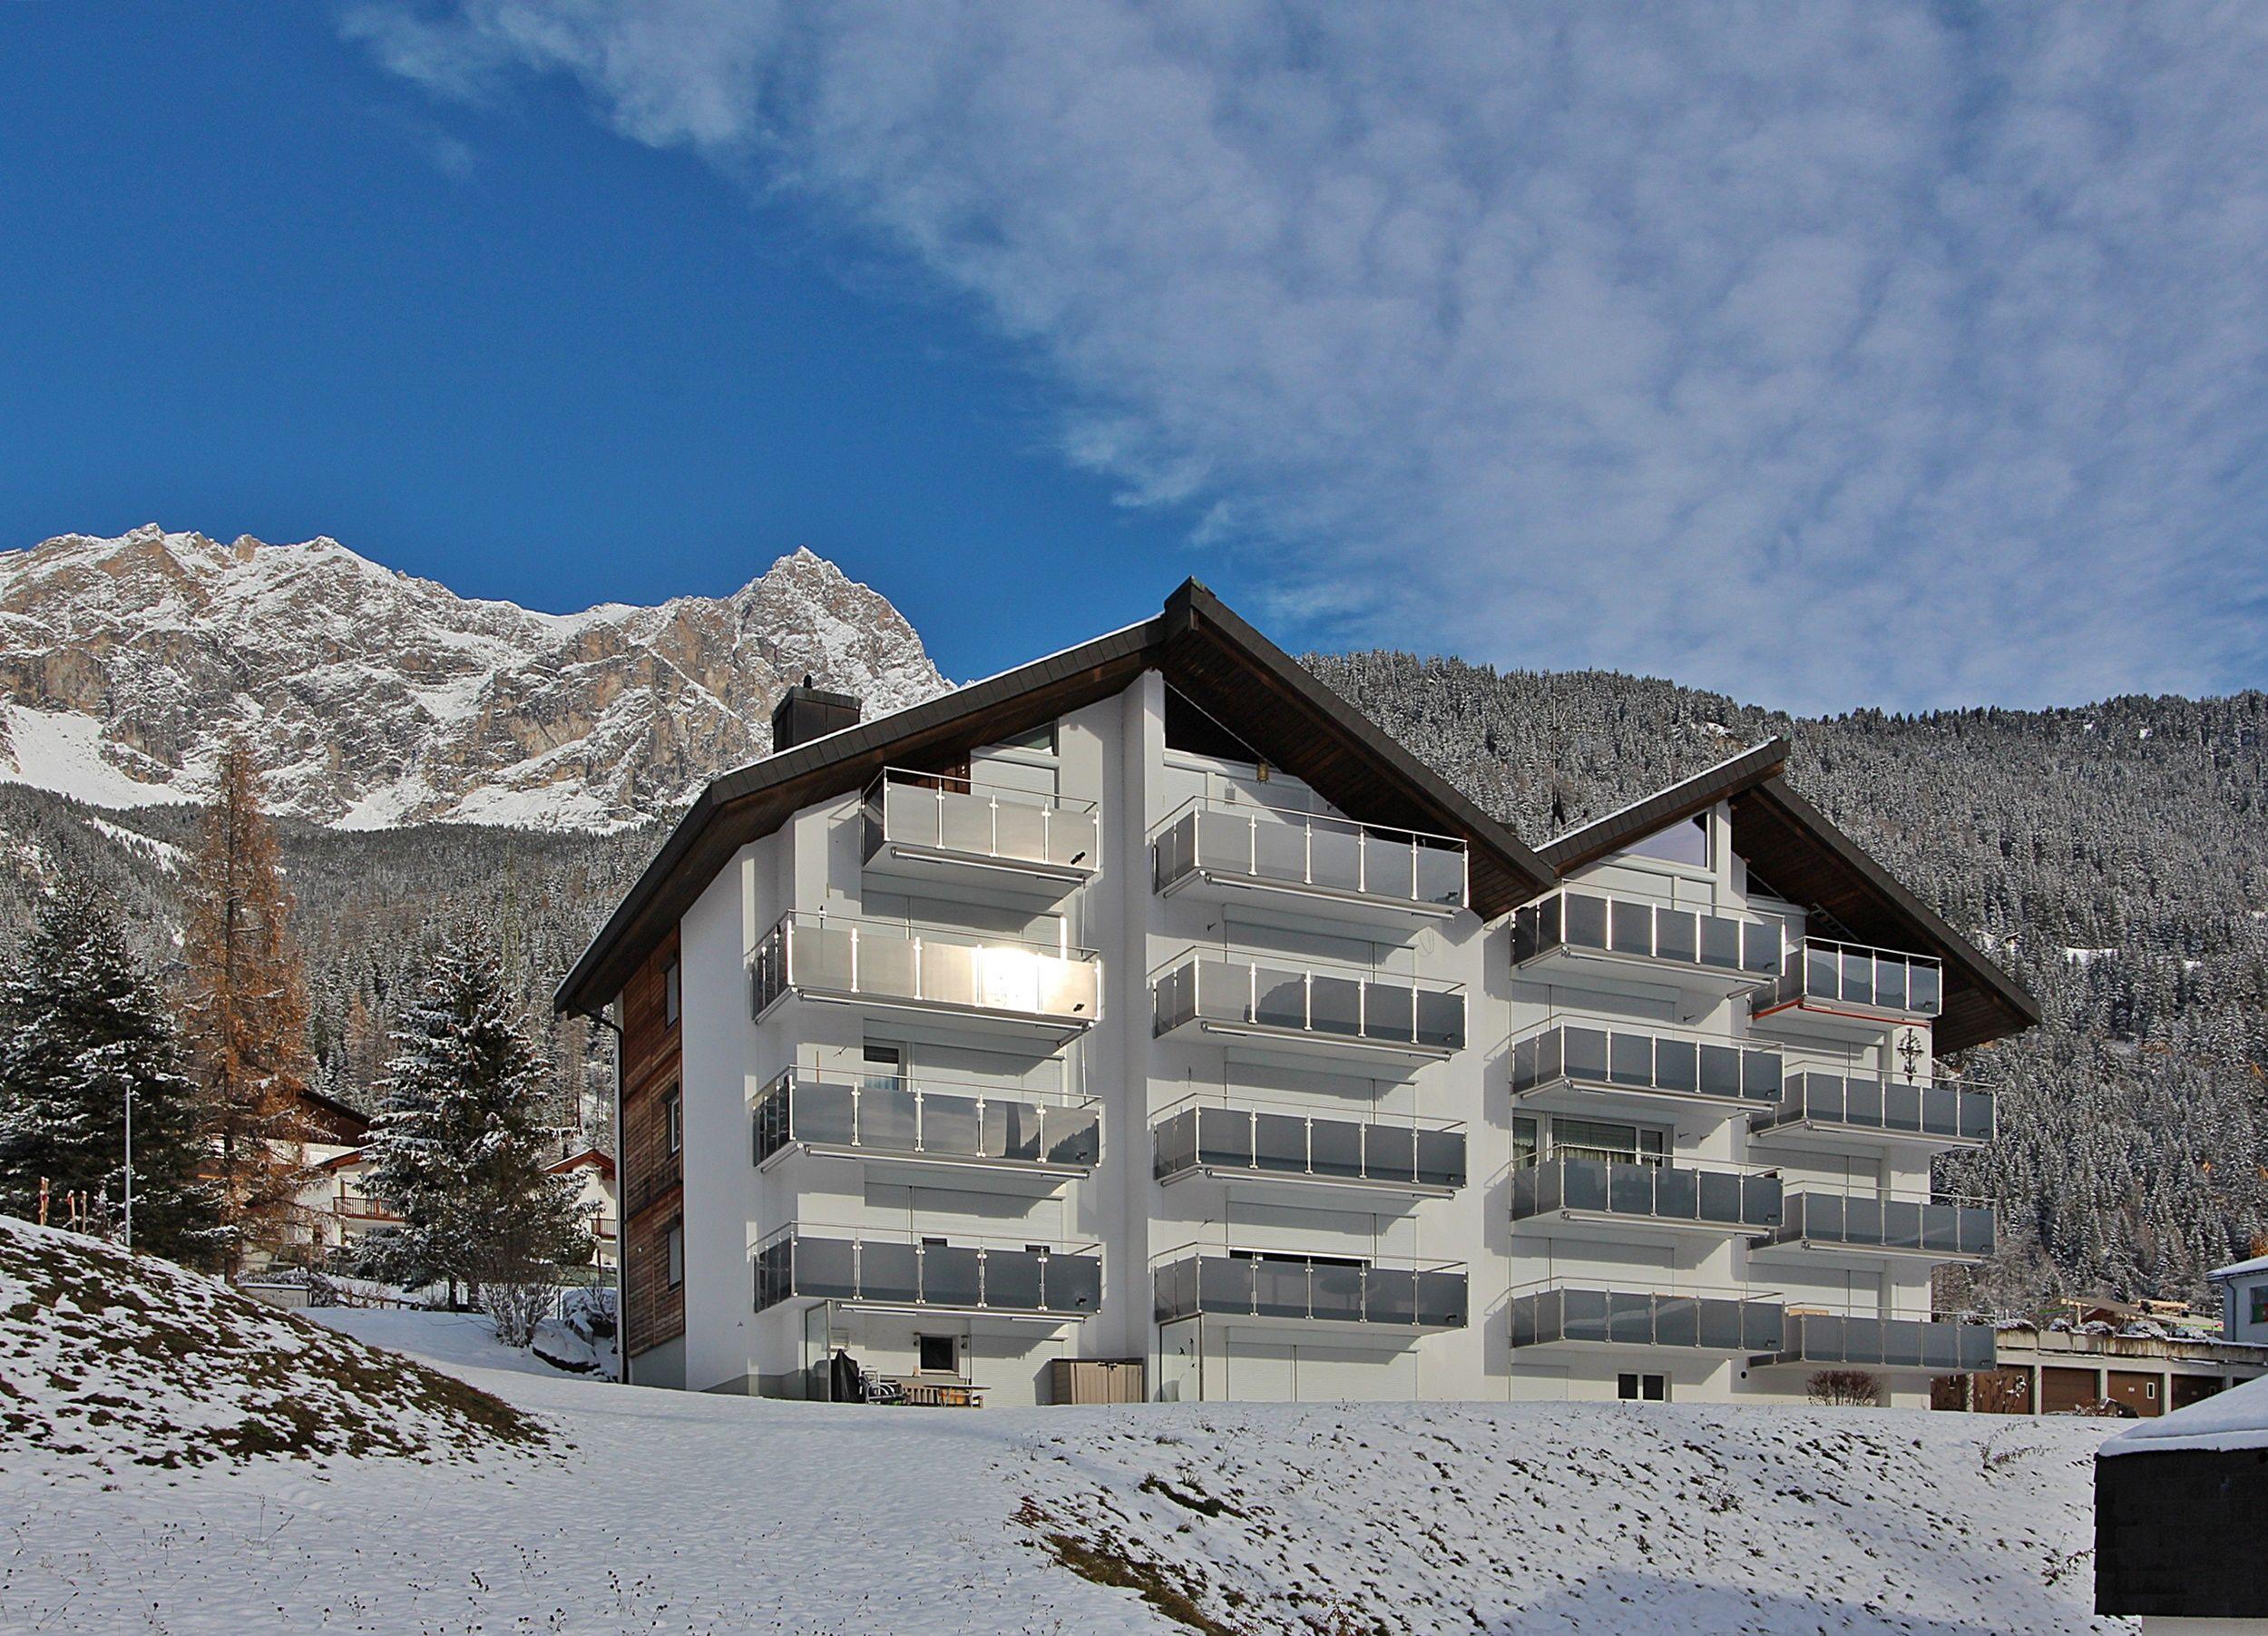 Tgesa la Niva 4 3.5 Zimmerwohnung - 4 Betten Ferienwohnung in der Schweiz